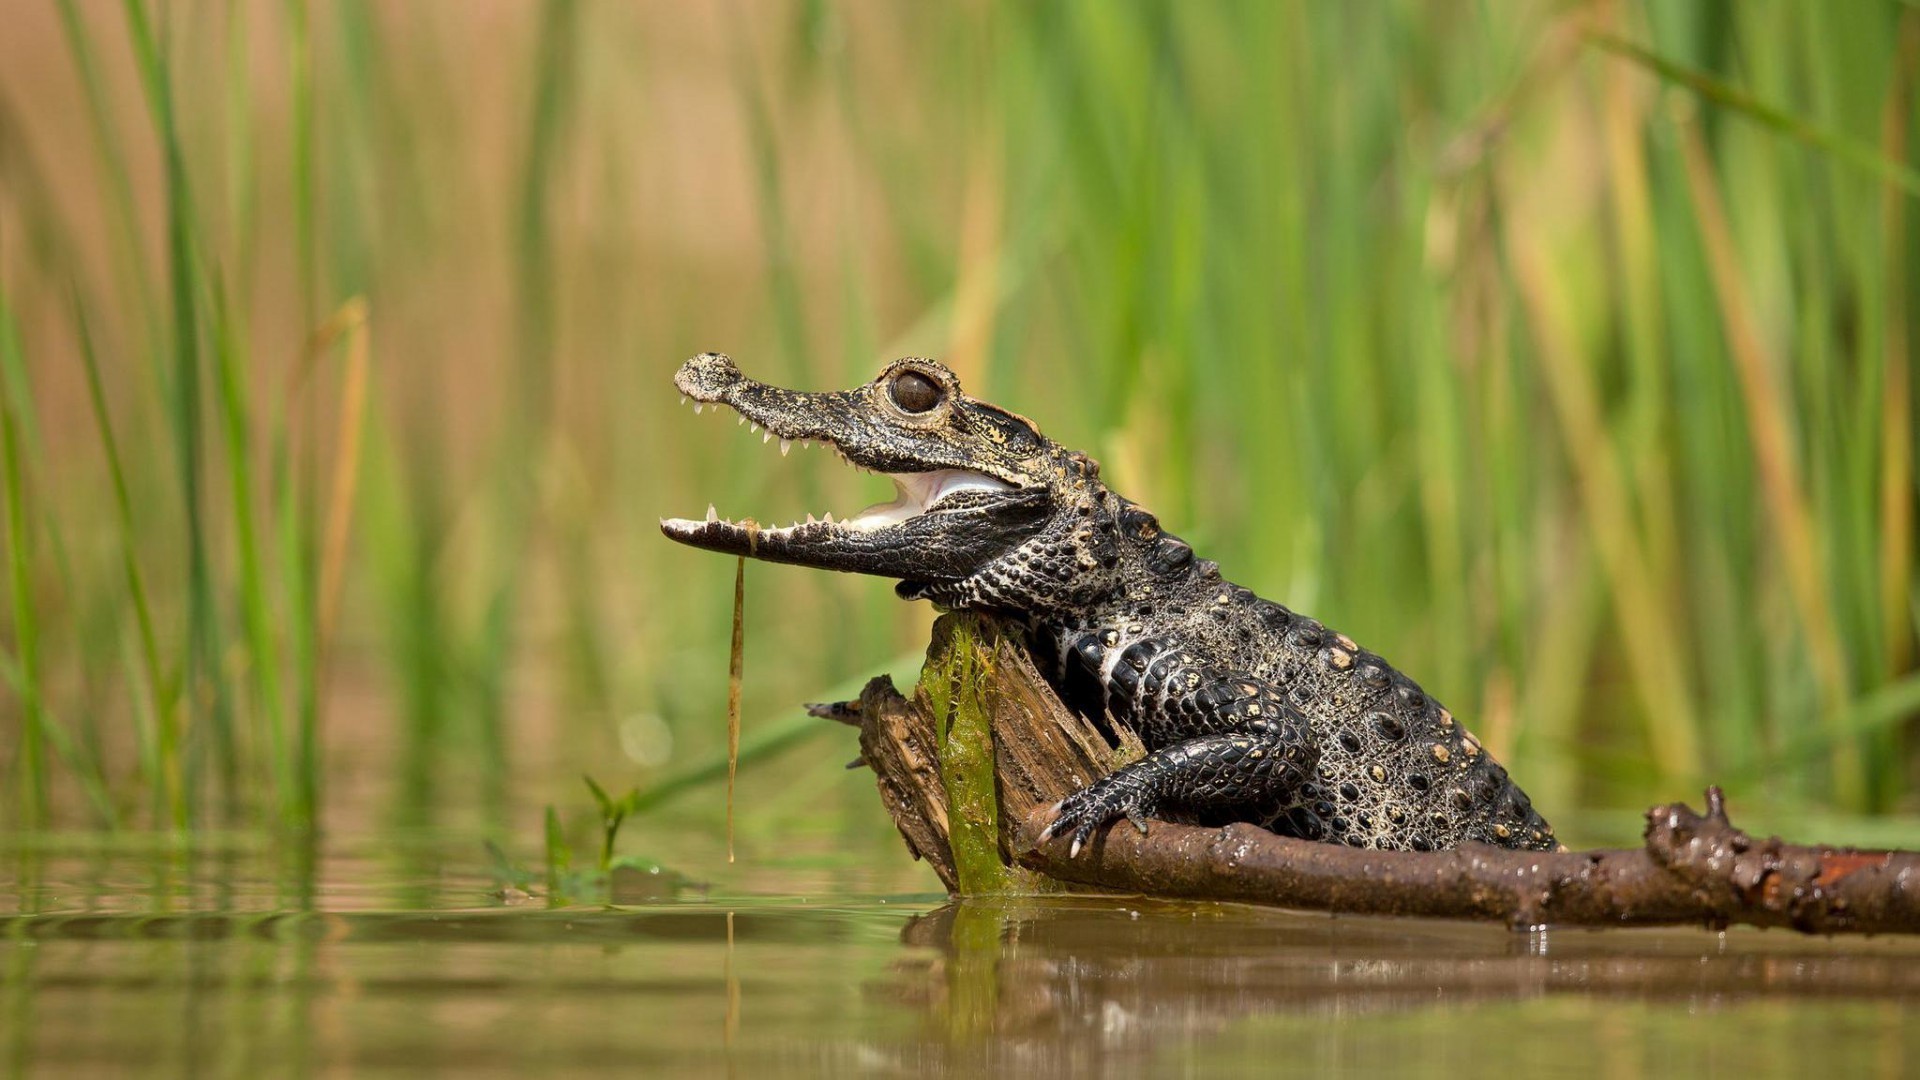 General 1920x1080 swamp reptiles animals alligators